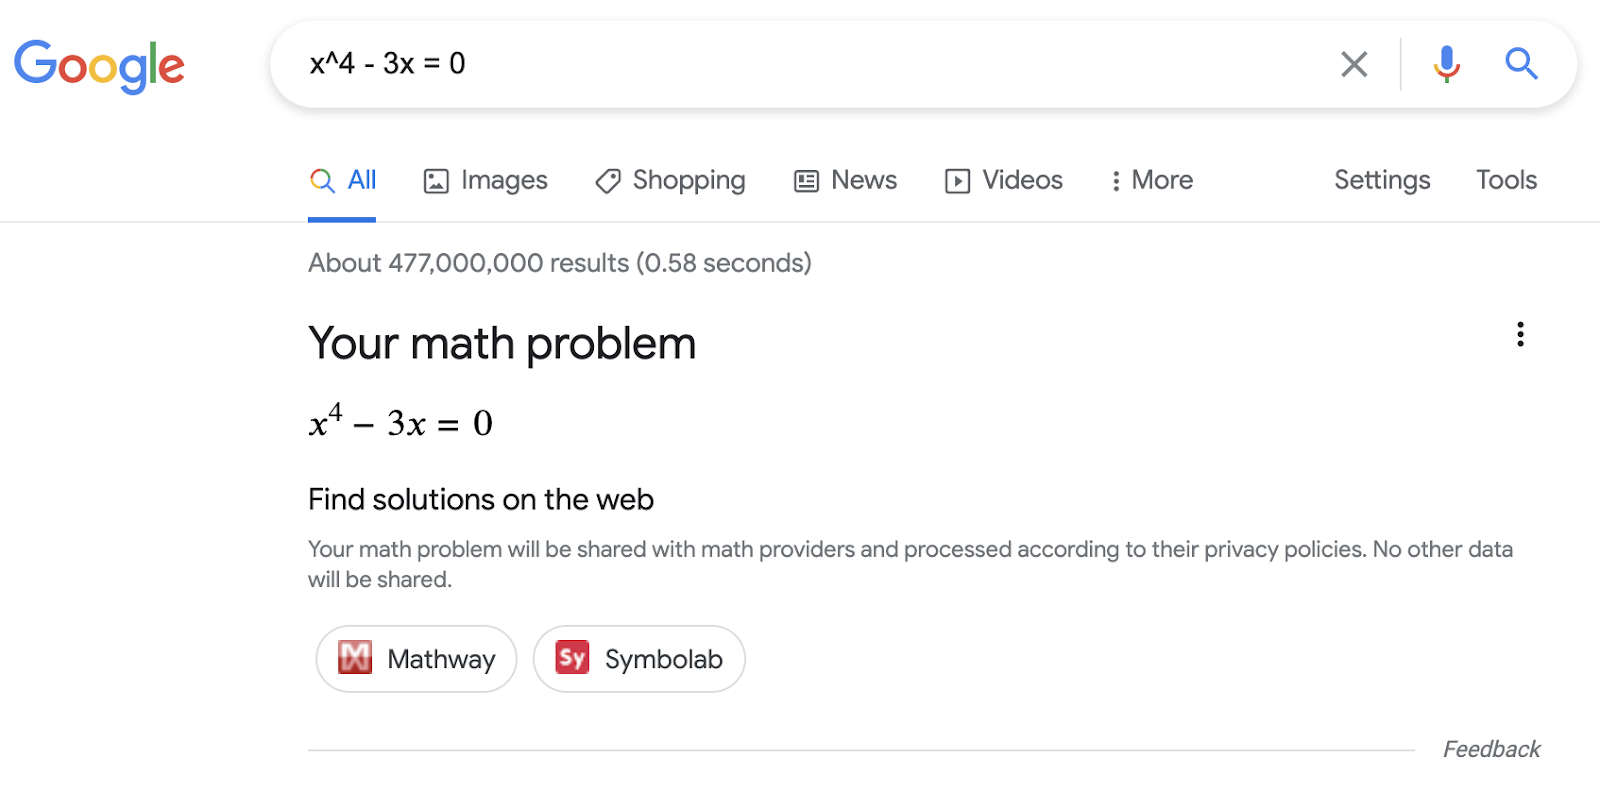 Resultado enriquecido de solucionadores de problemas matemáticos en la Búsqueda de Google